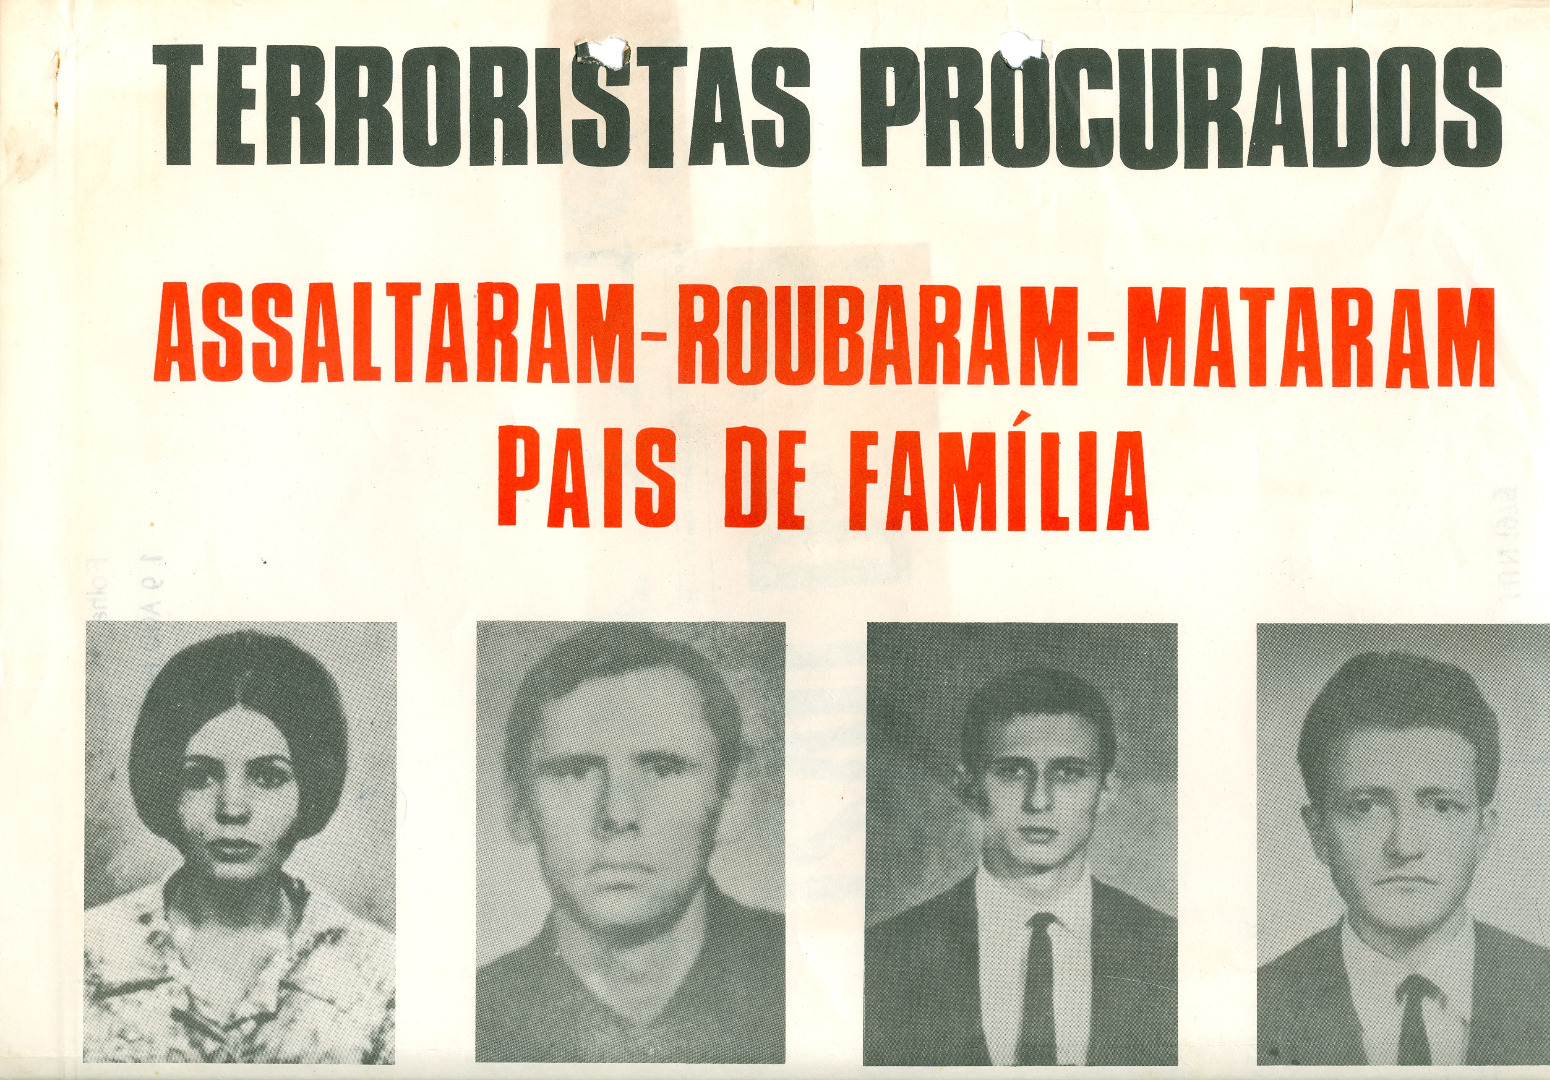 Cartaz identificando quatro militantes guerrilheiros procurados pela polícia durante a ditadura